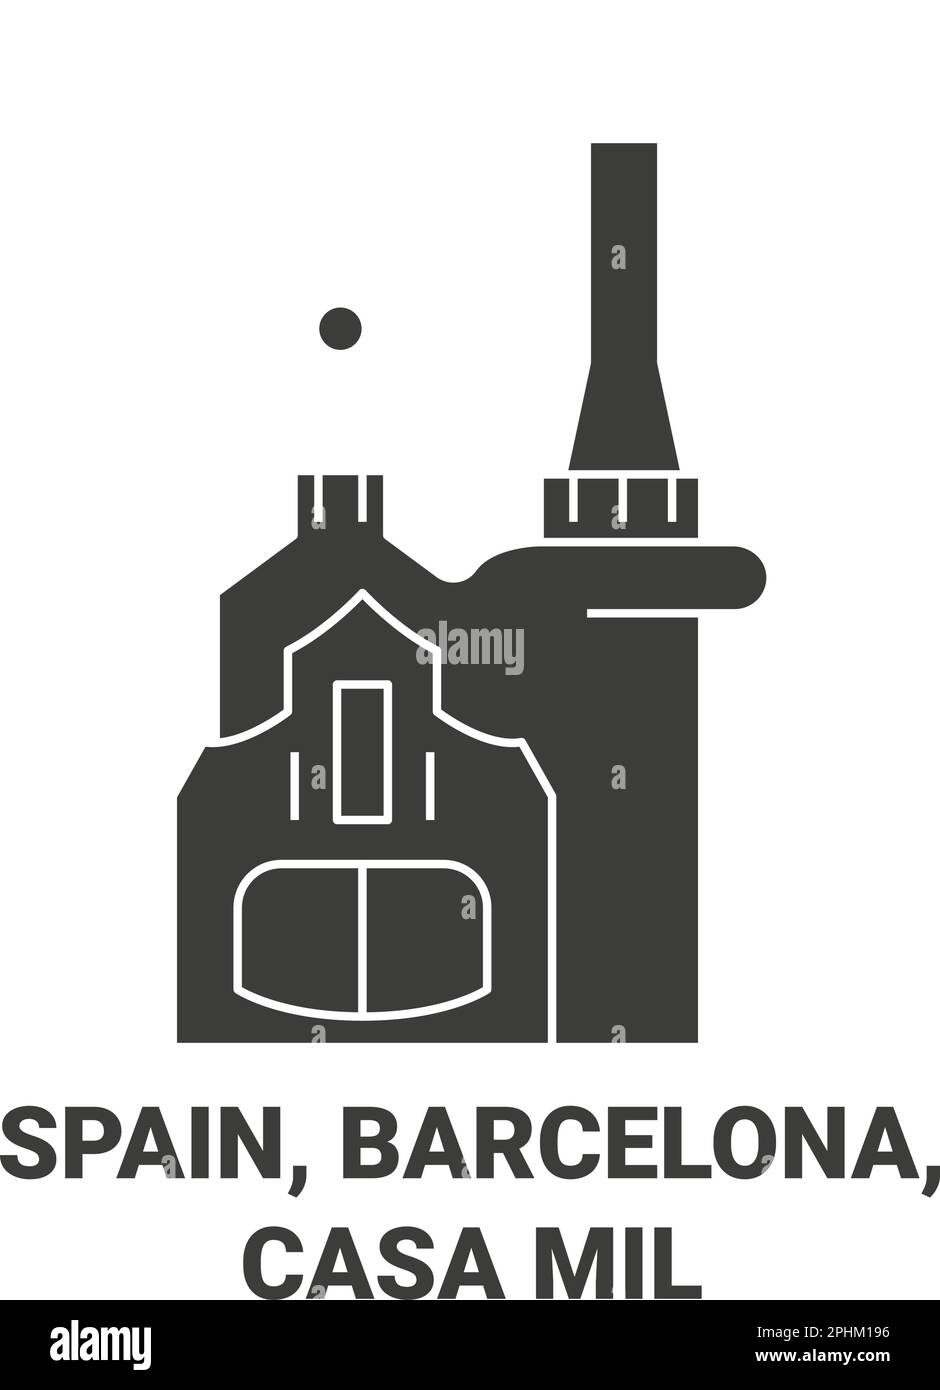 Spain, Barcelona, Park Guell travel landmark vector illustration Stock Vector